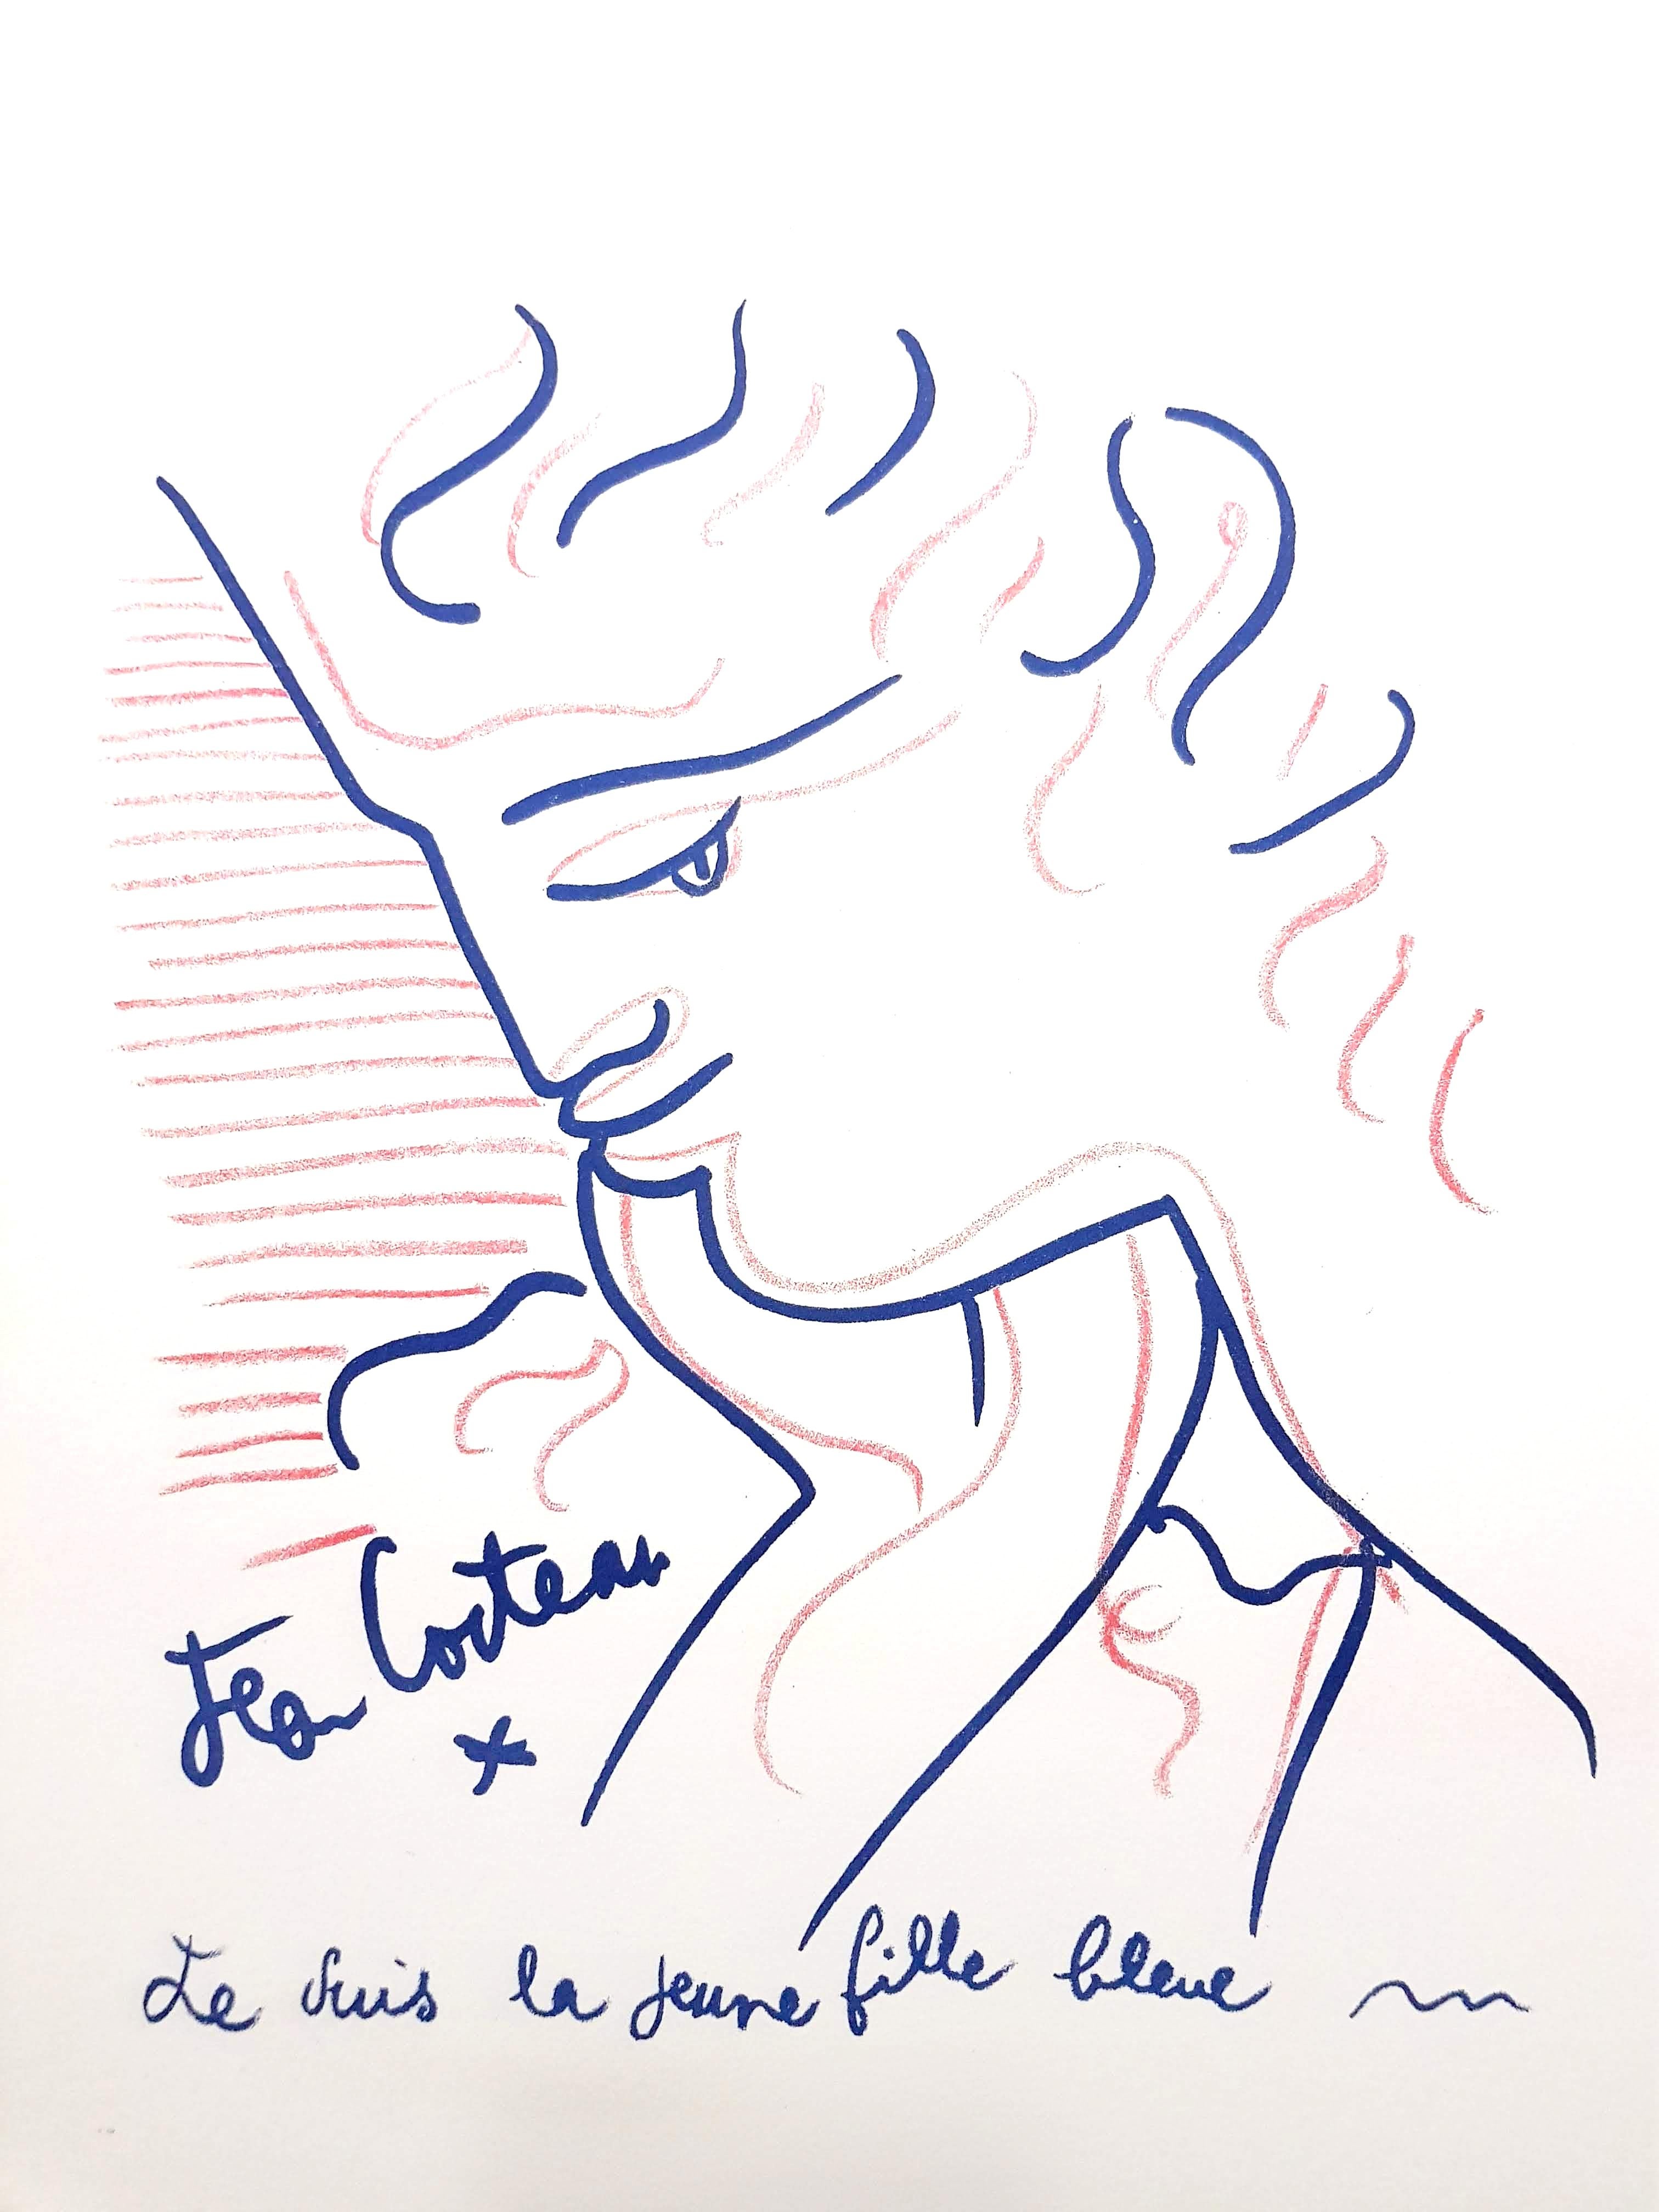 Original-Lithographie von Jean Cocteau
Titel: Blaue Dame 
In der Platte signiert
Abmessungen: 32 x 25,5 cm
Auflage: 200
1959
Verlag: Bibliophiles Du Palais
Unnummeriert wie ausgegeben